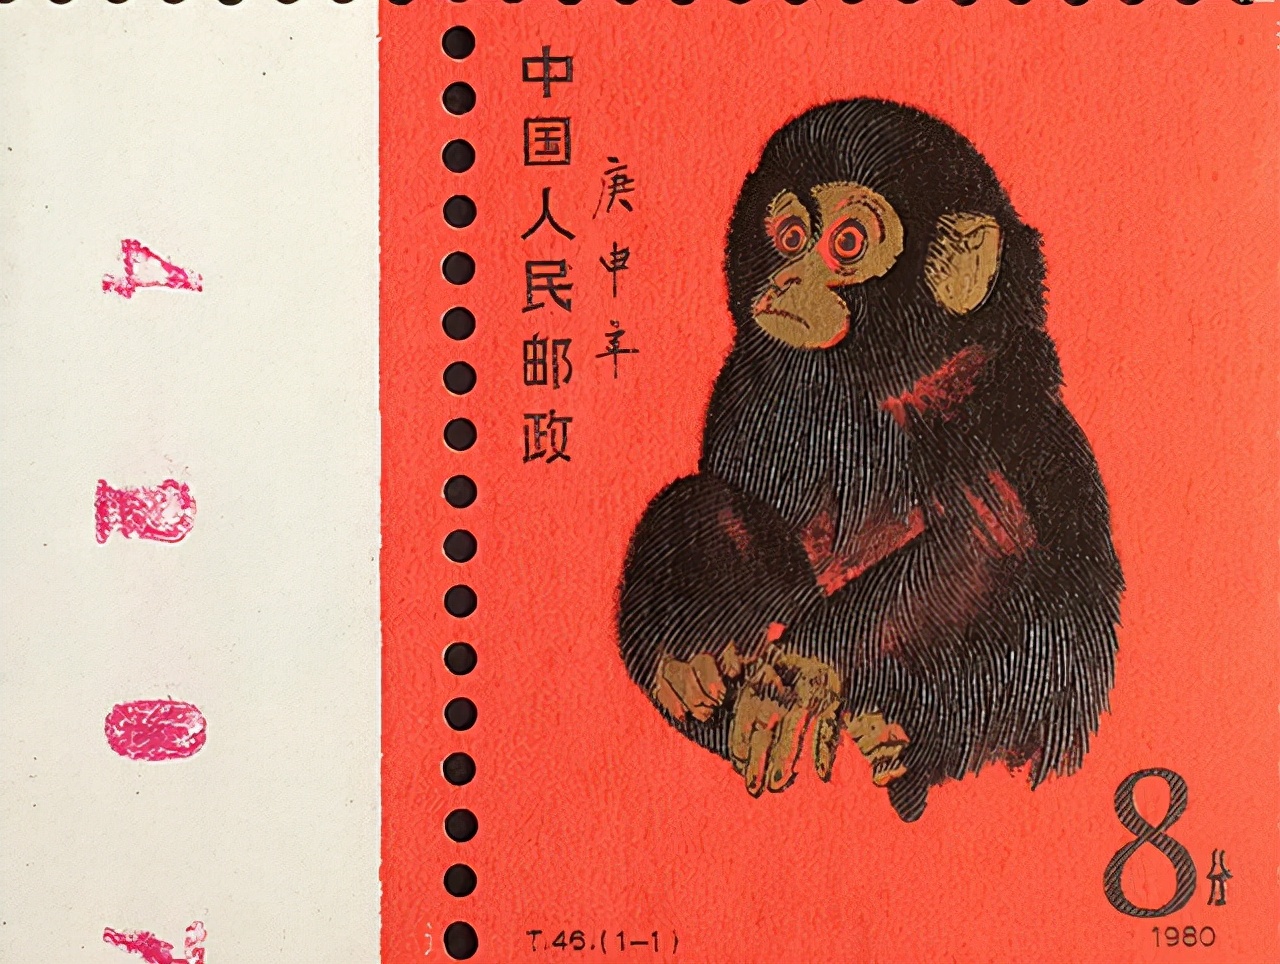 80版猴票谁画的图片